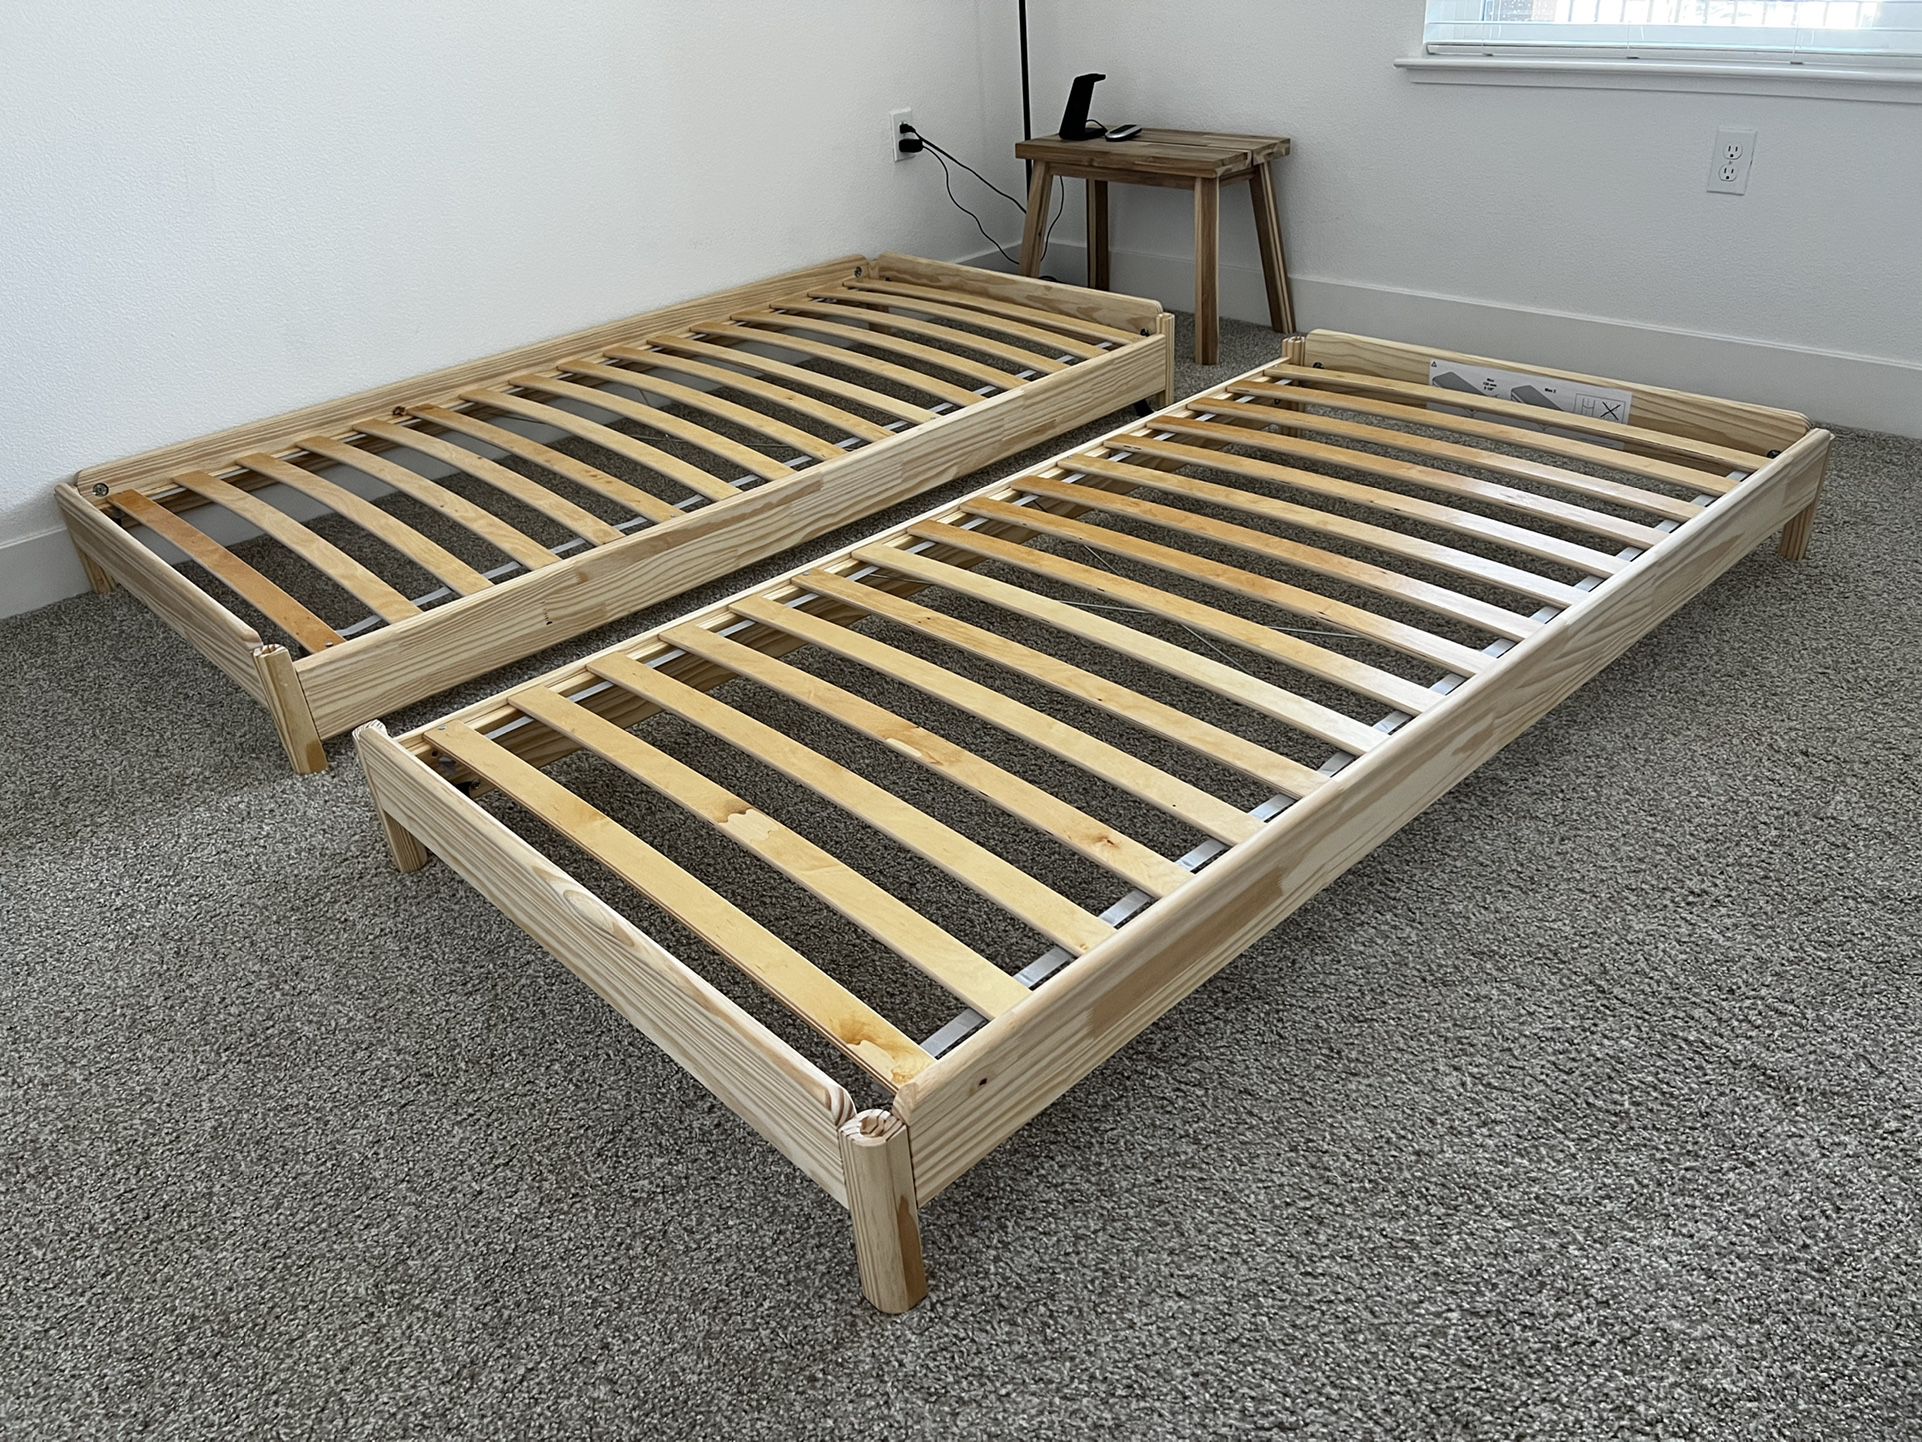 UTÅKER Stackable bed, pine, Twin - IKEA